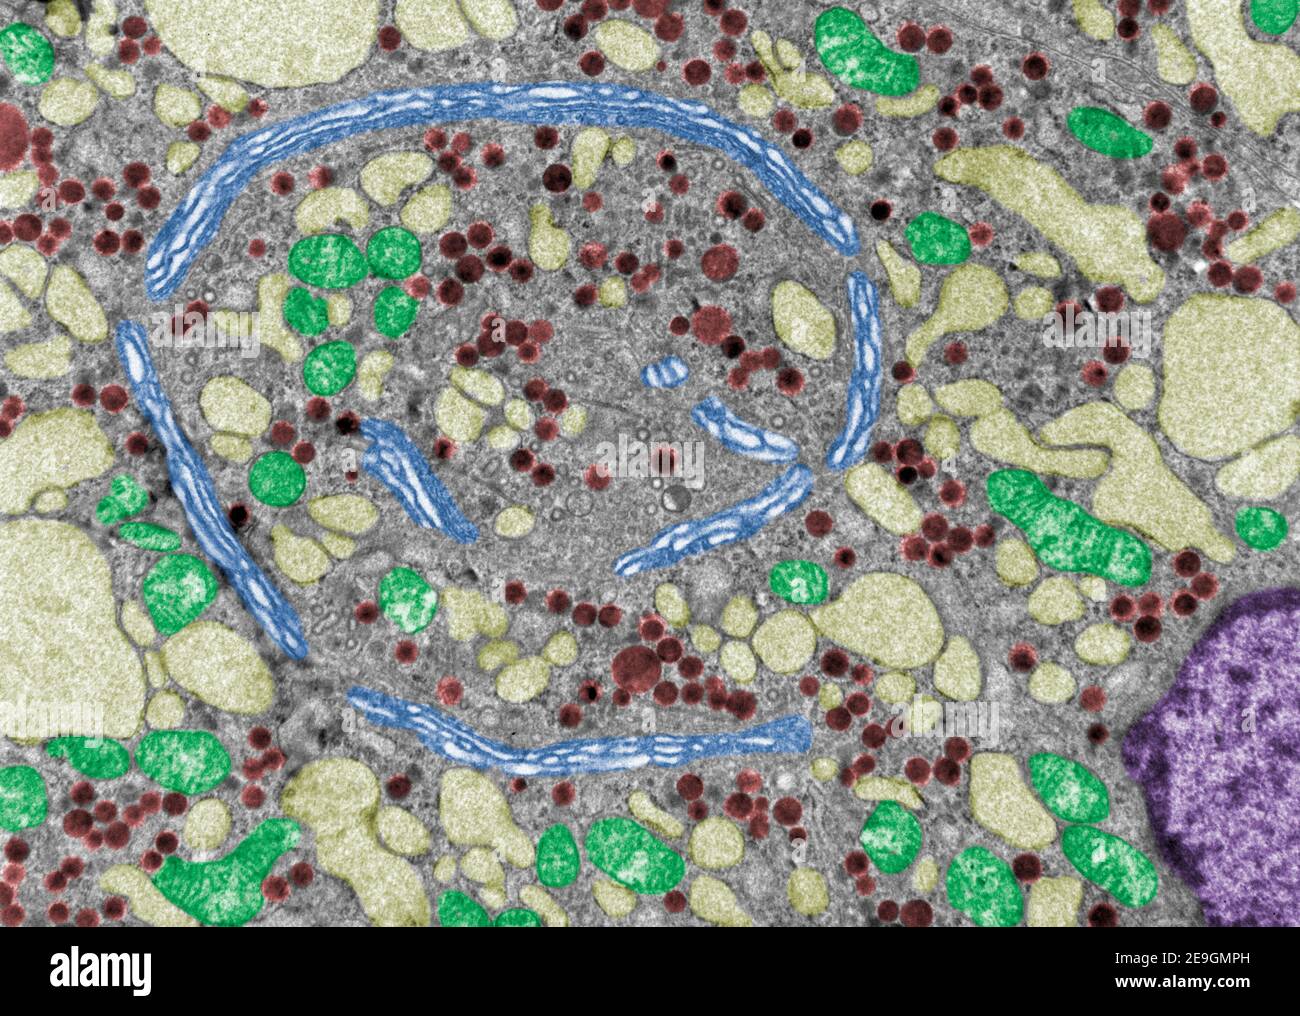 Mikroskopmikroskop-Falschfarbe mit Golgi-Apparat (blau), Mitochondrien (grün), sehr dilatierten RER-Zisternen (hellgelb) und secr Stockfoto